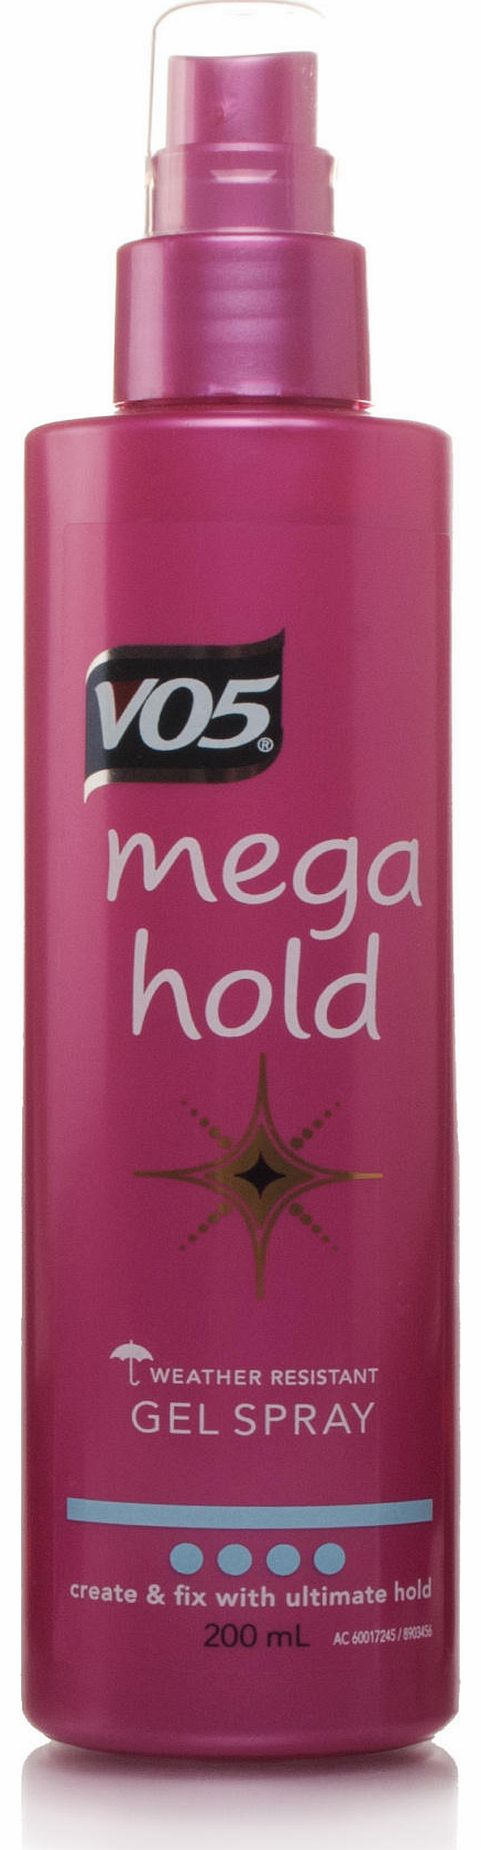 Mega Hold Gel Spray